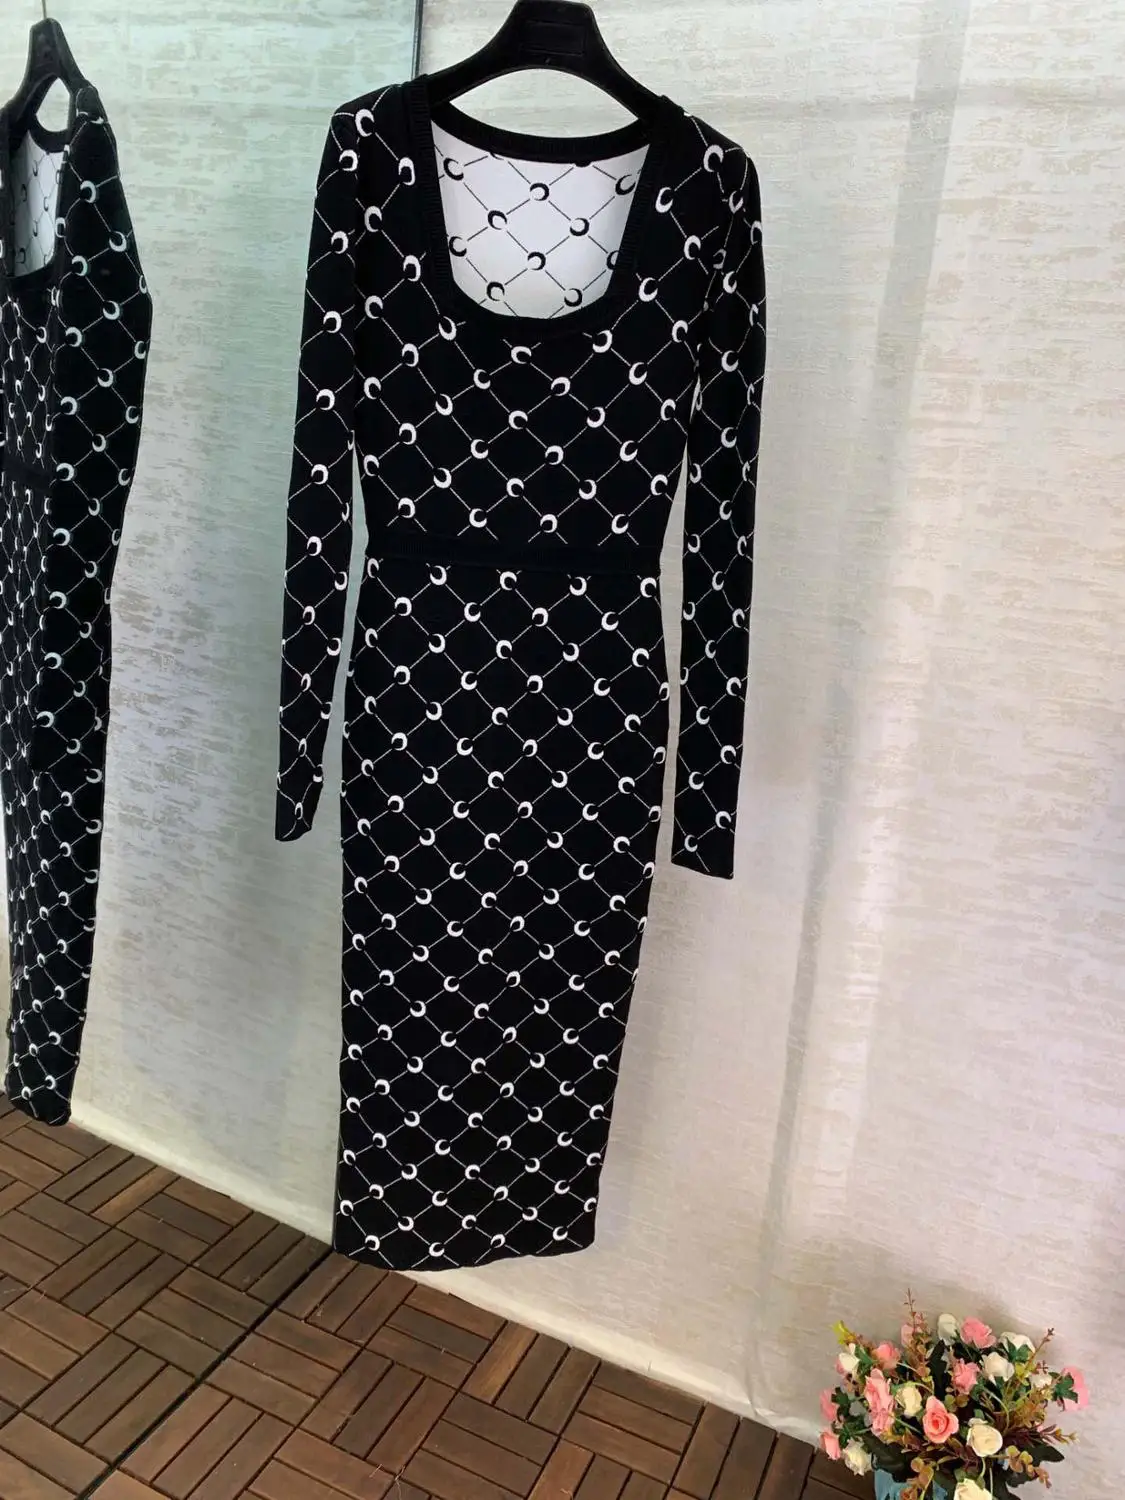 11,26 высококачественное новое винтажное платье с принтом Луны и квадратным воротником, модное трикотажное облегающее платье с разрезом